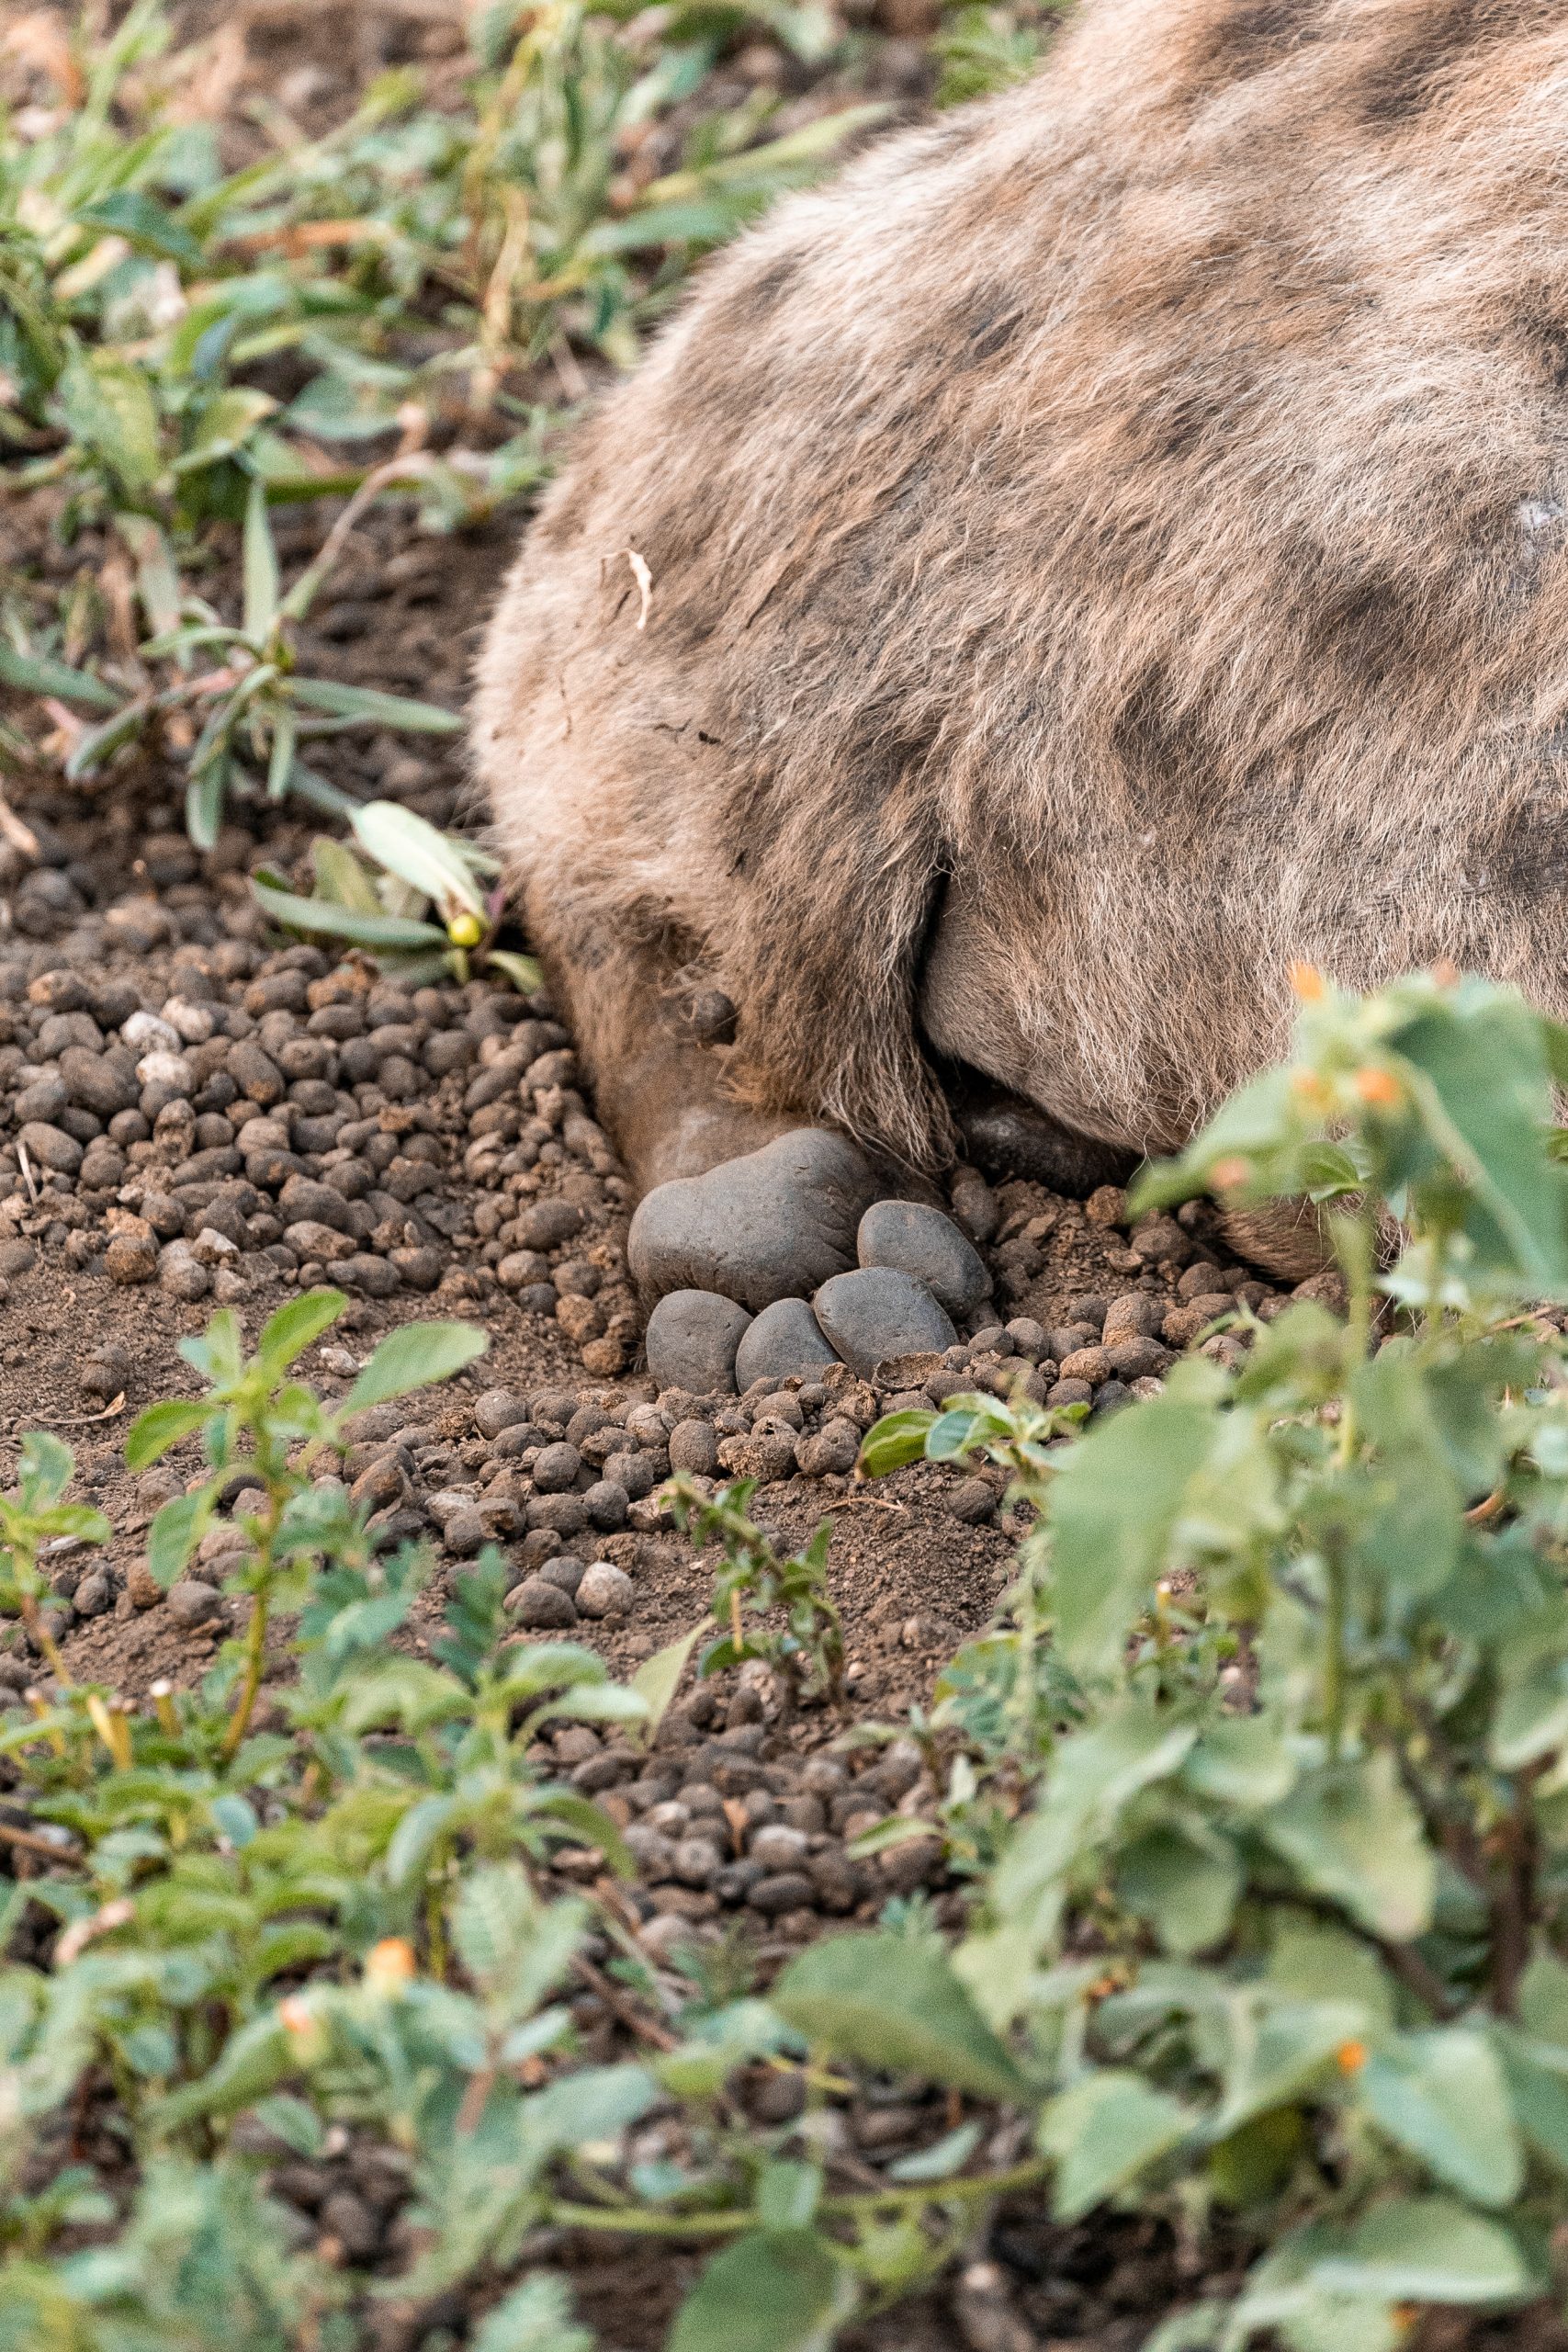 Hyänentatze im Sand 